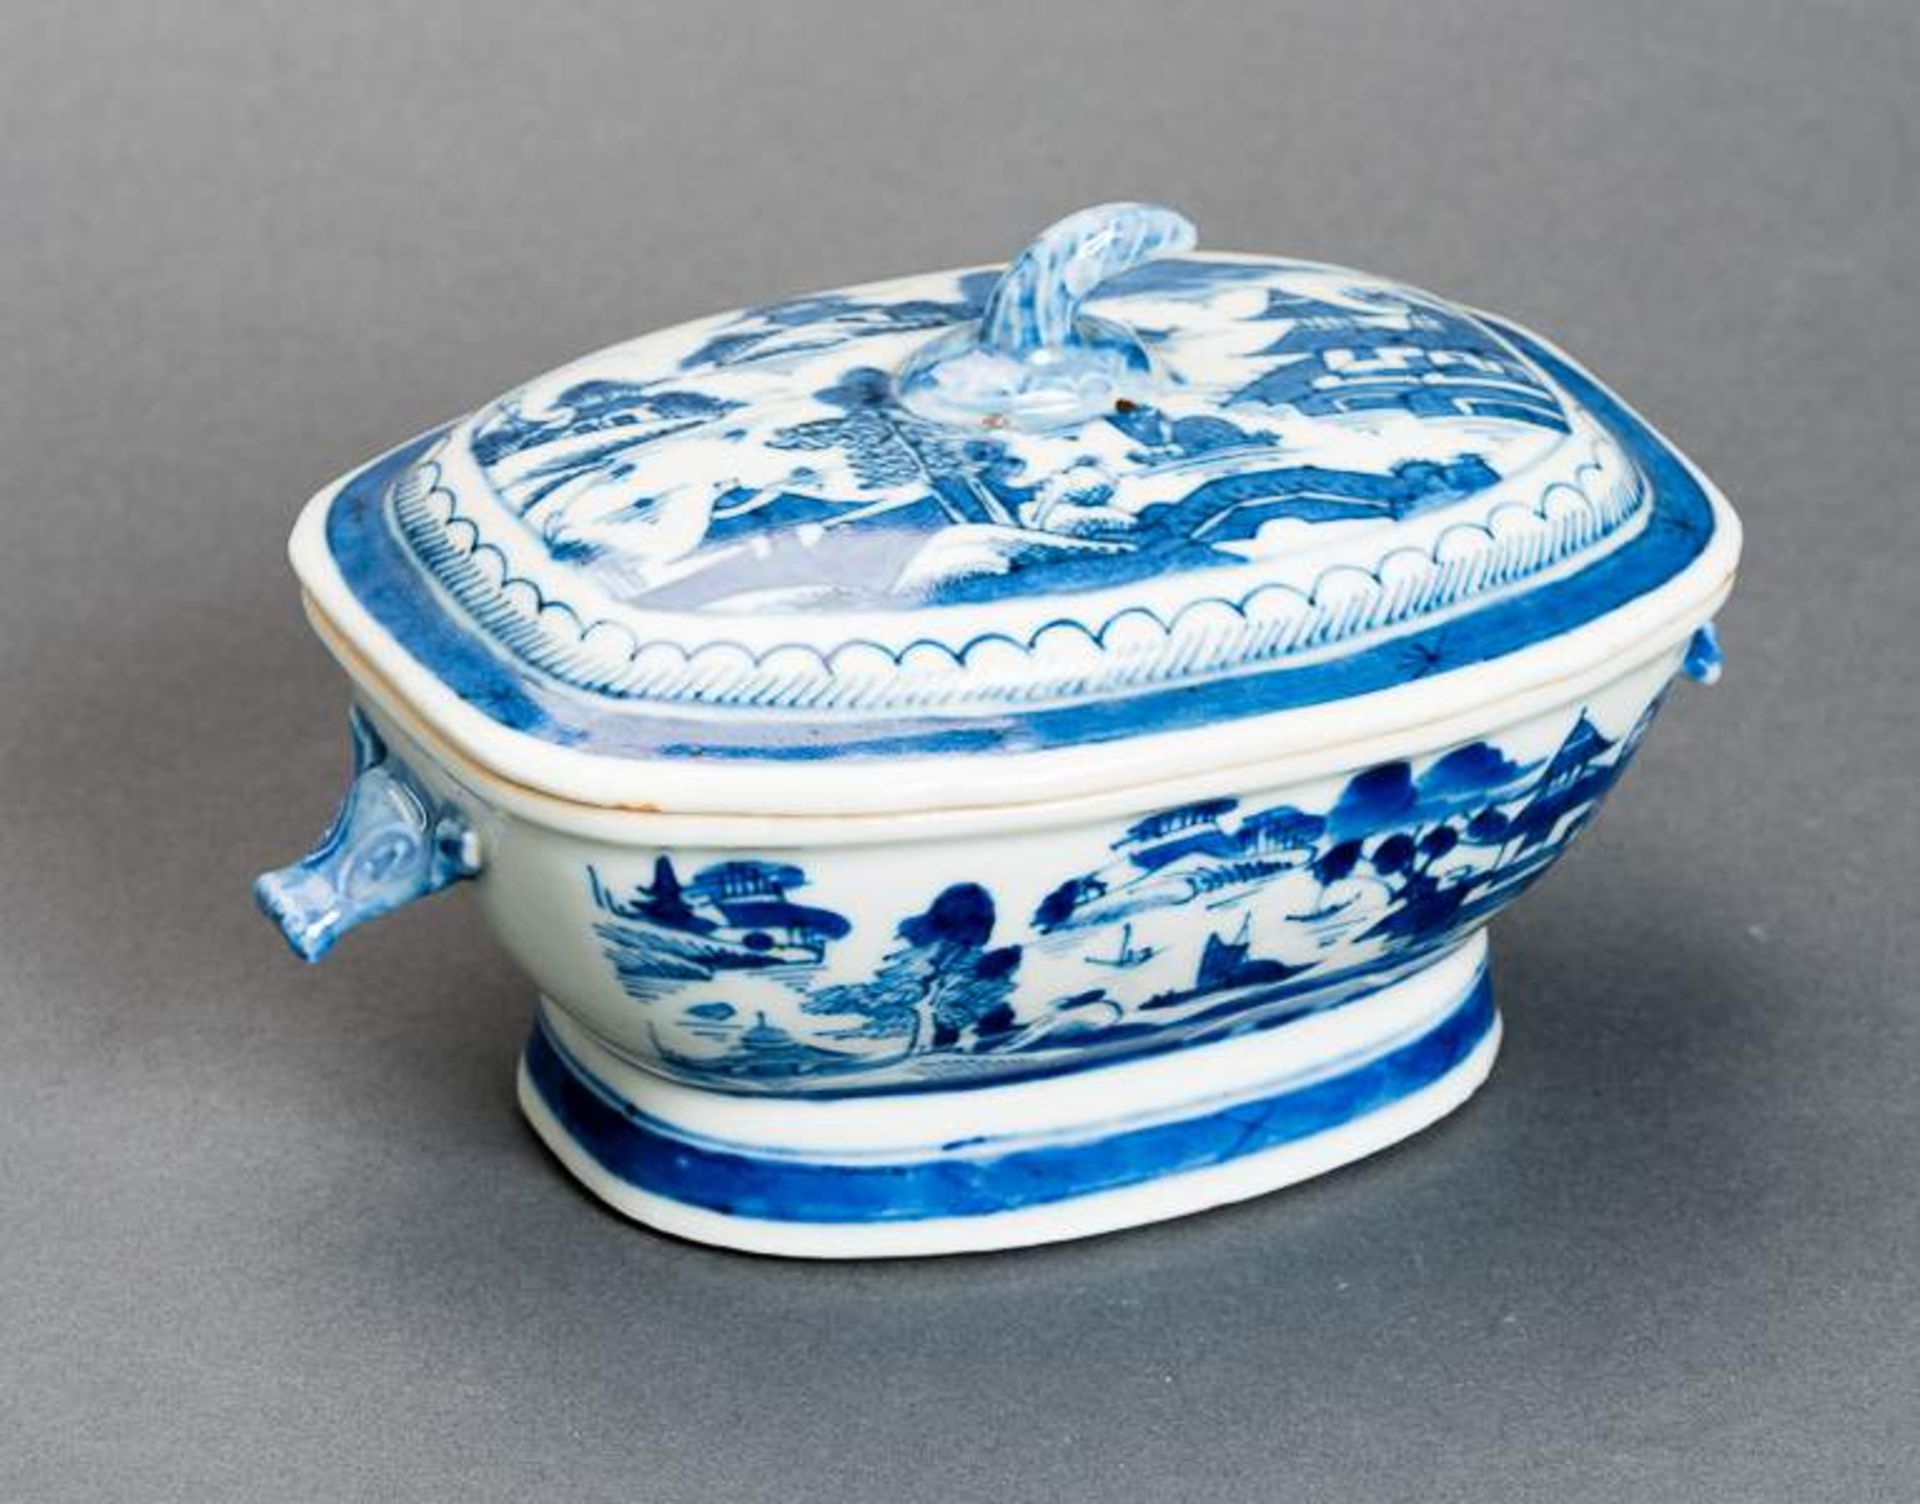 DECKELSCHALE Blauweiß-Porzellan. China, Qing-Dynastie, 19. Jh. Diese sehr ansprechende oval- - Image 7 of 11